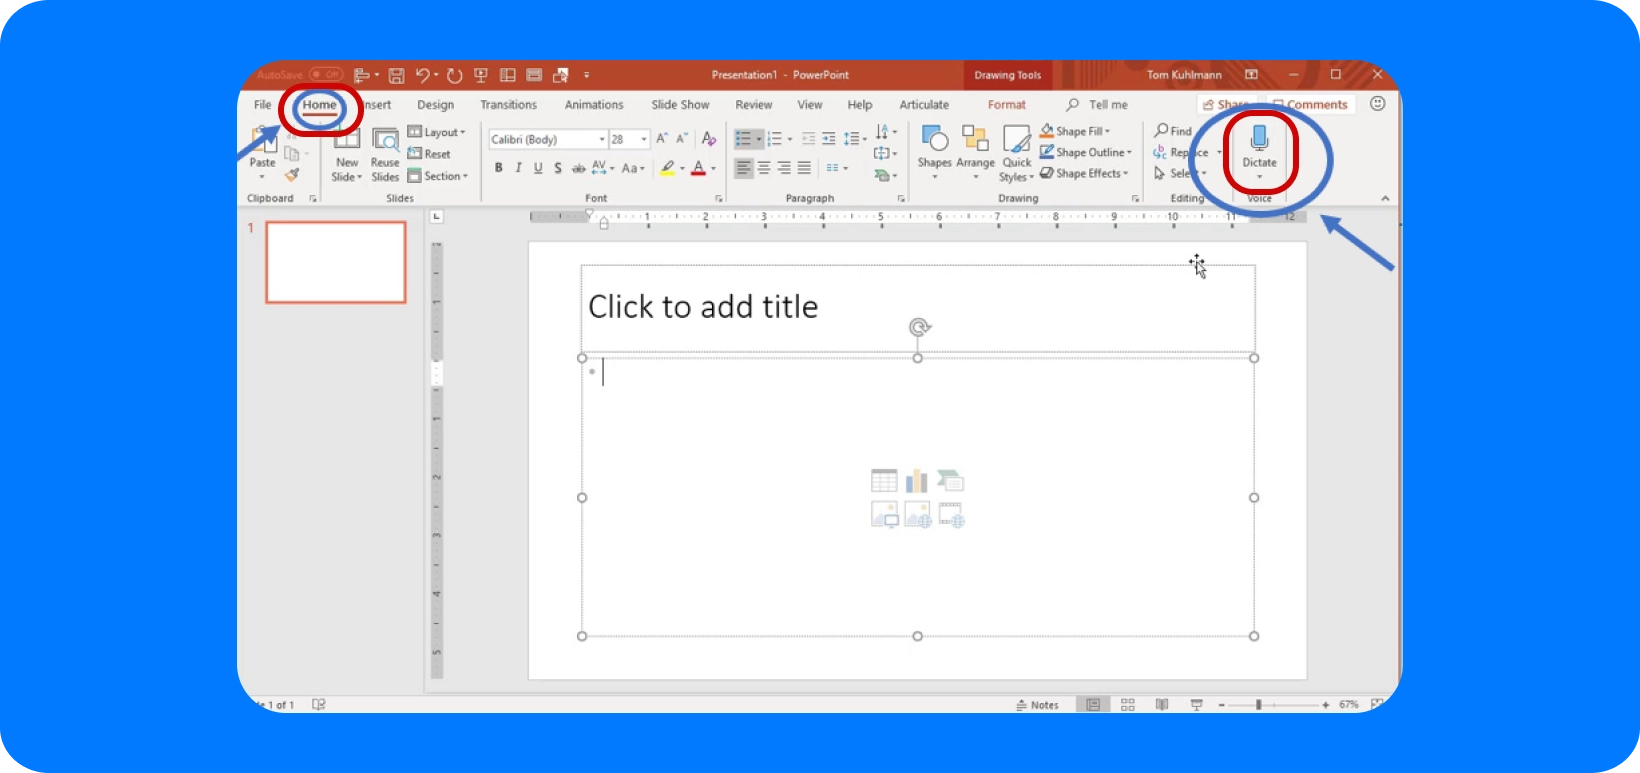 PowerPoint sesten metne dönüştürme için 'Dikte' işlevini vurgulayan arayüz.